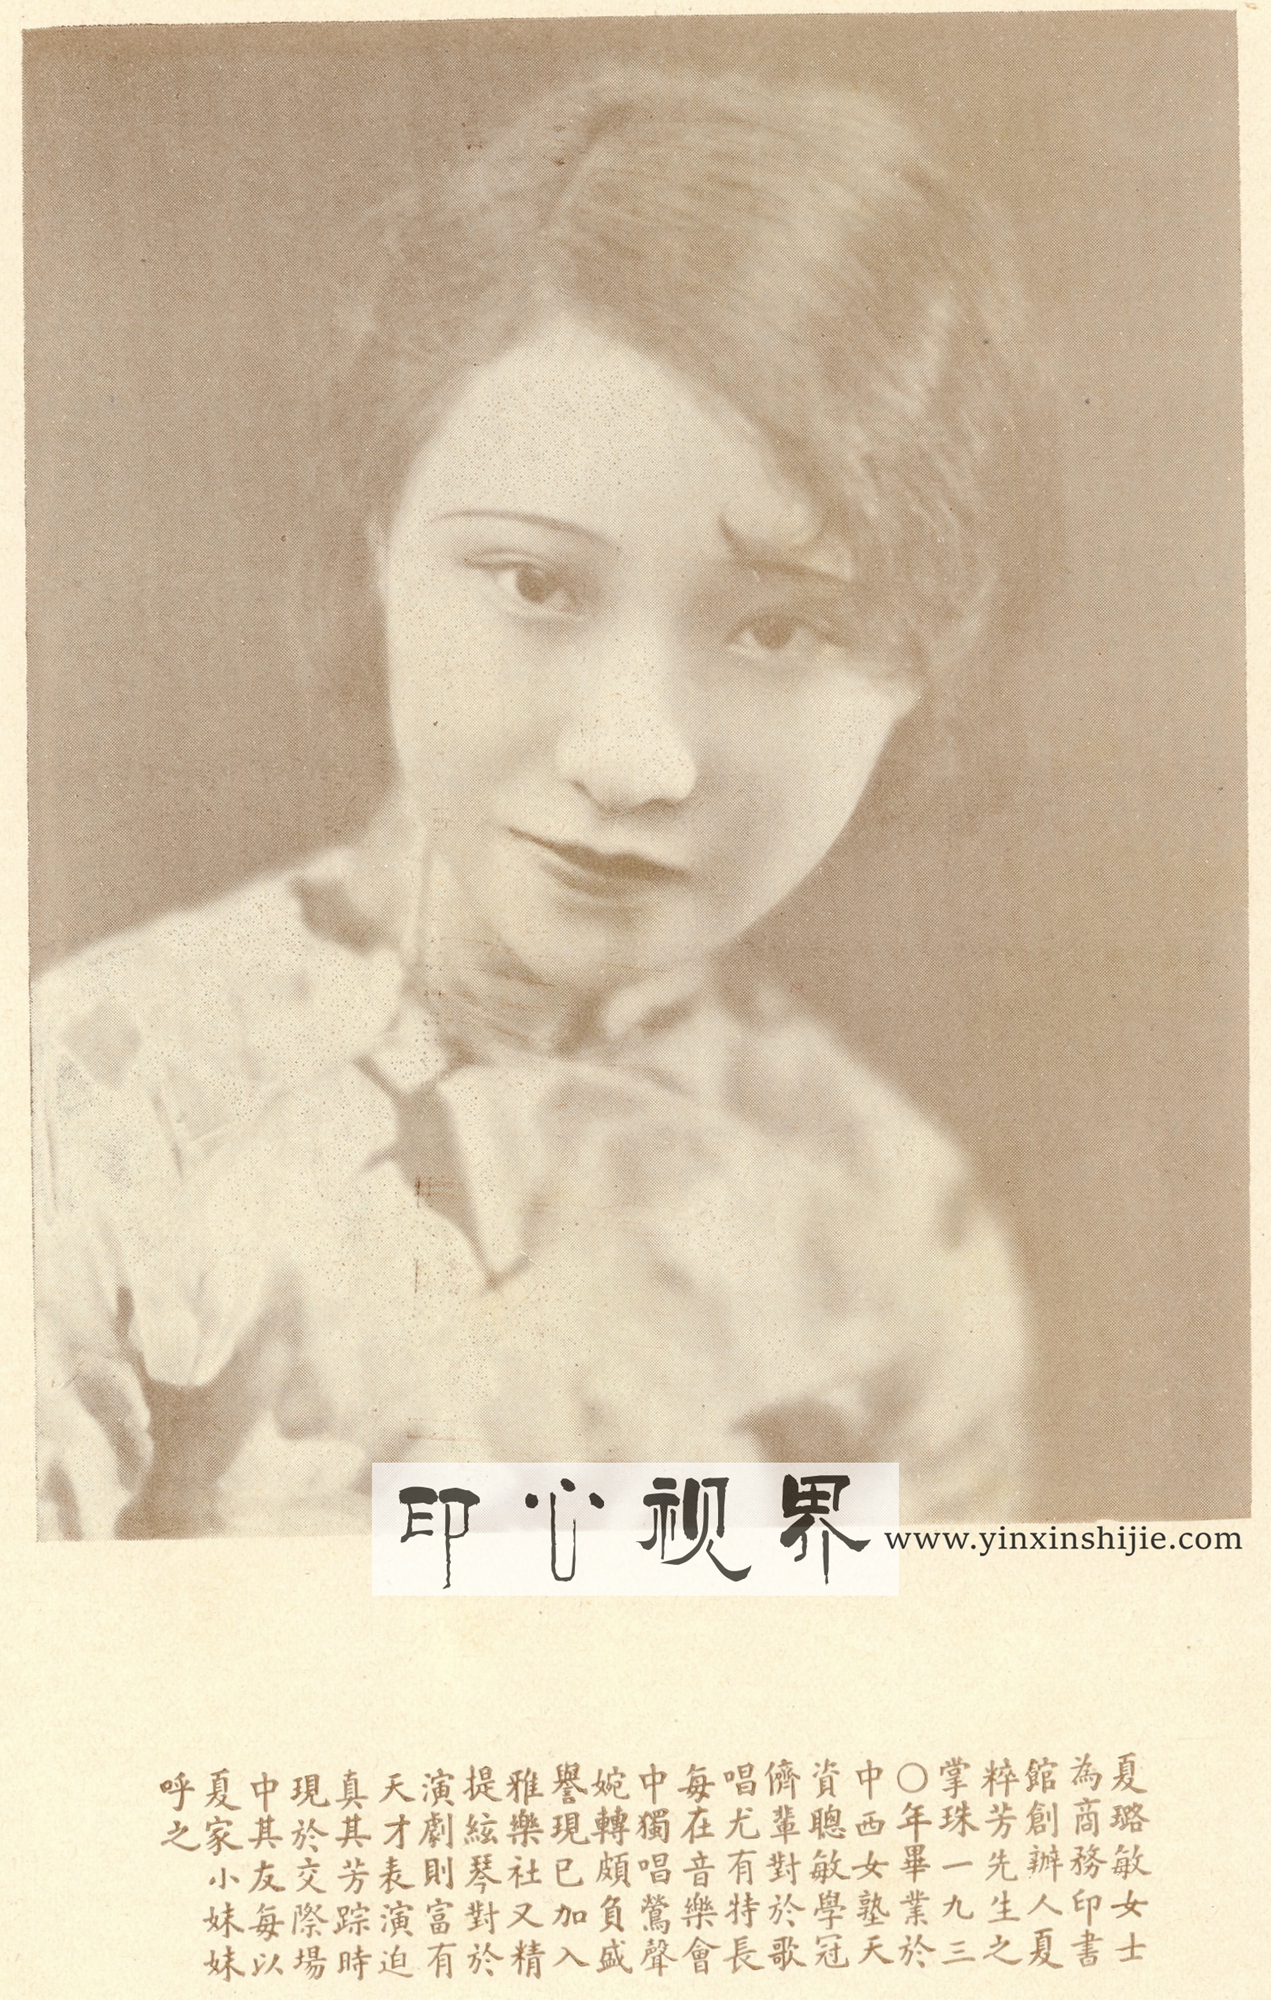 中国近代女音乐家夏璐敏女士--1930年《闺秀影集》